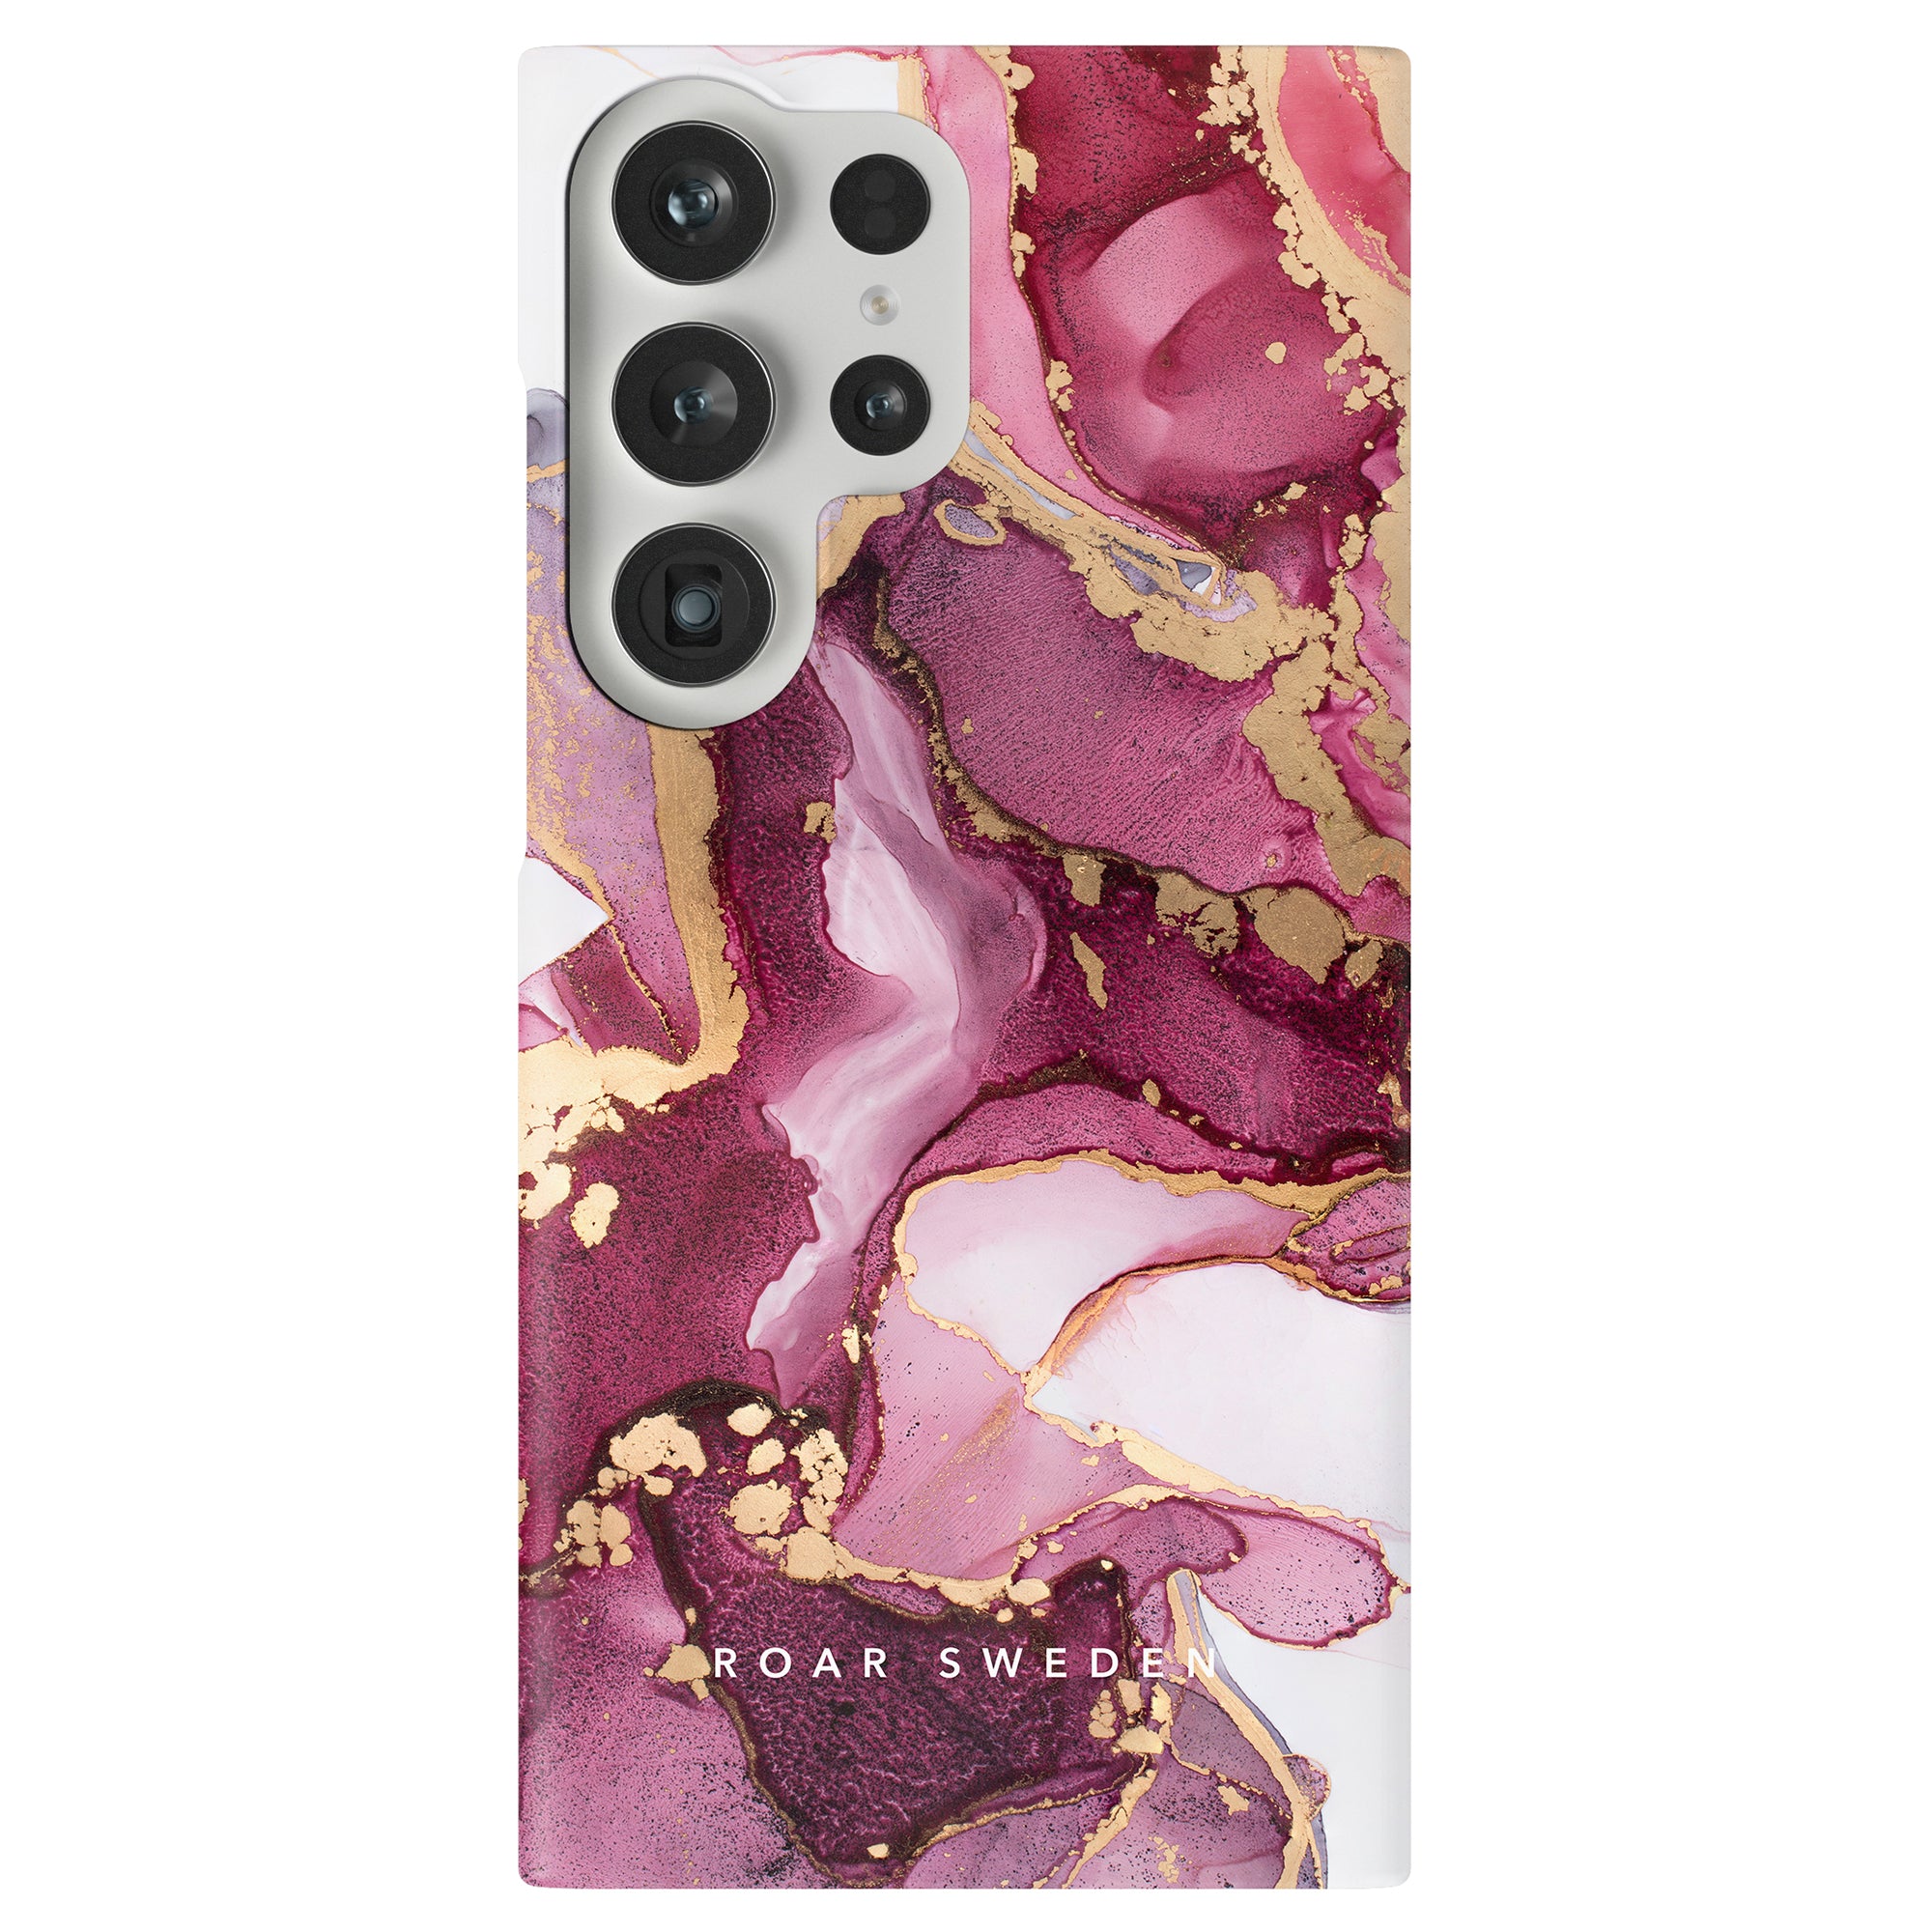 Ett Levante slimmar telefonfodral i rosa och guldmarmor designat med praktisk funktionalitet.